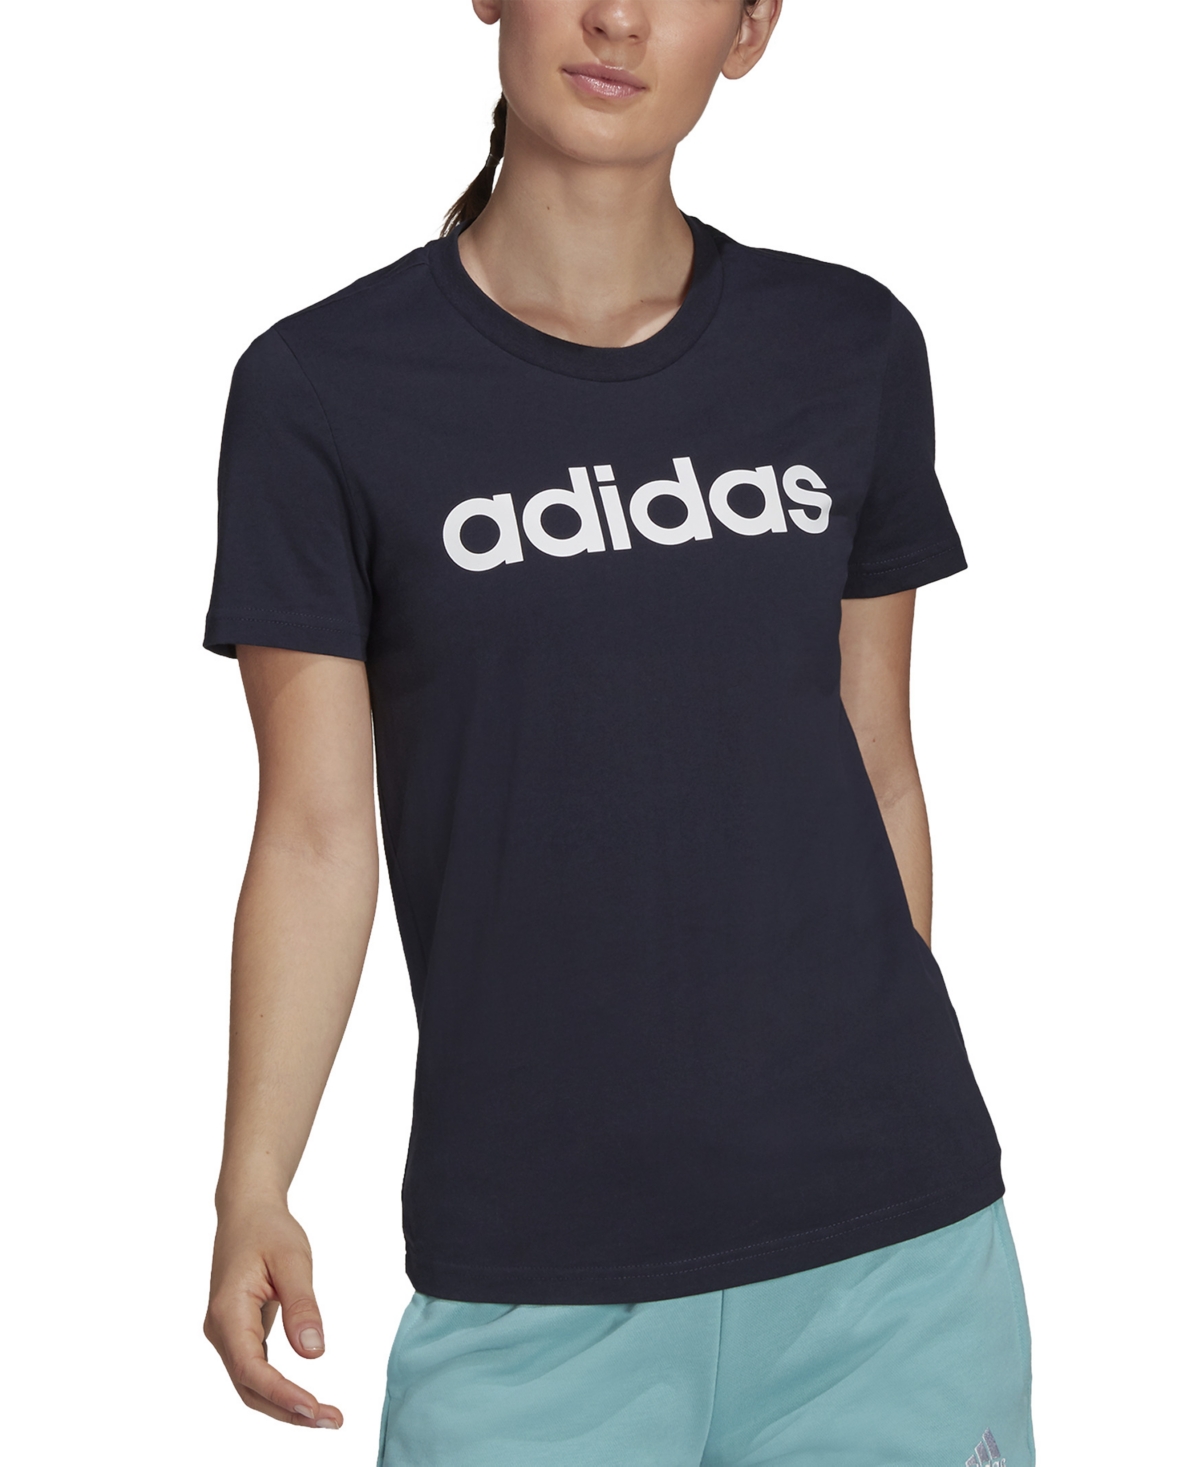 adidas Women's Essentials Cotton Linear Logo T-Shirt